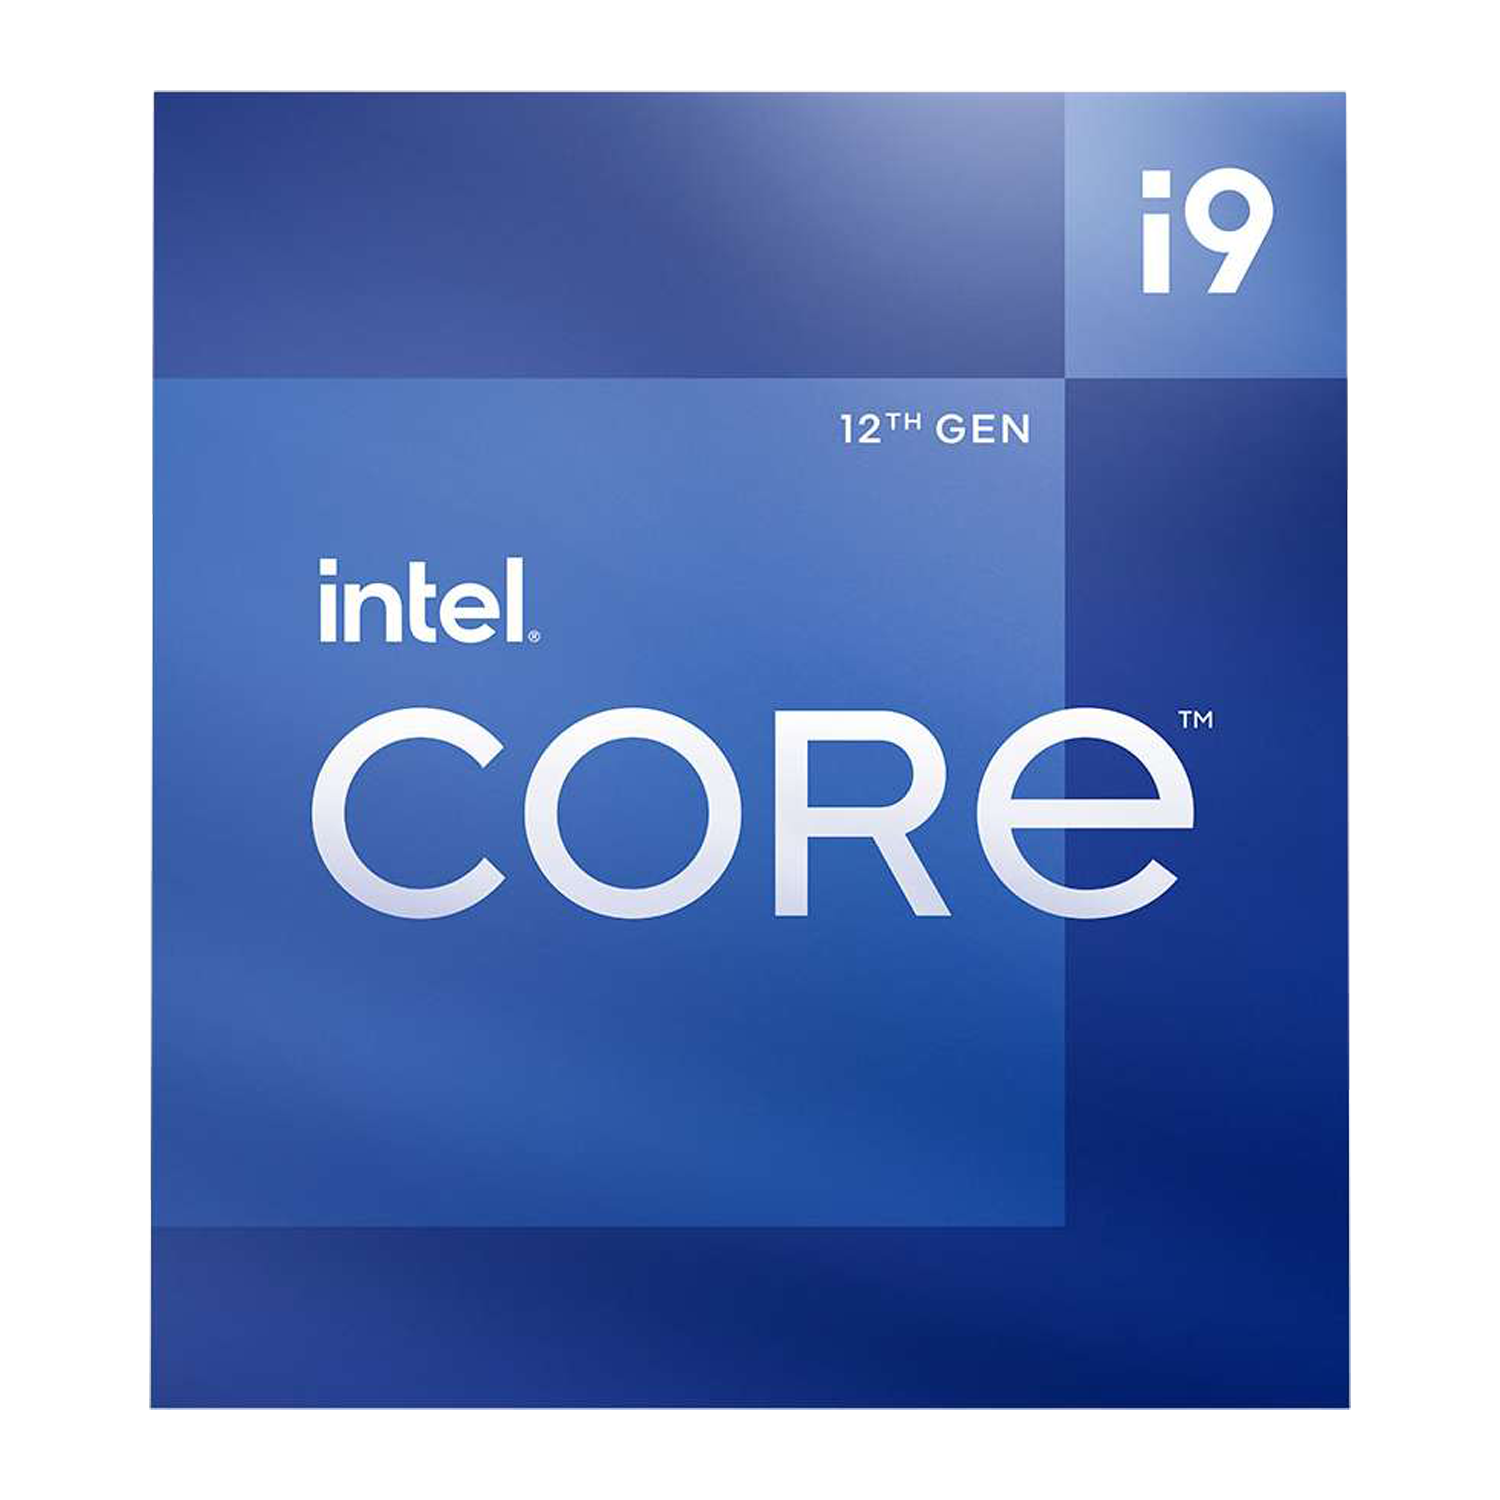 12th Gen Intel Core i9-12900 Desktop Processor